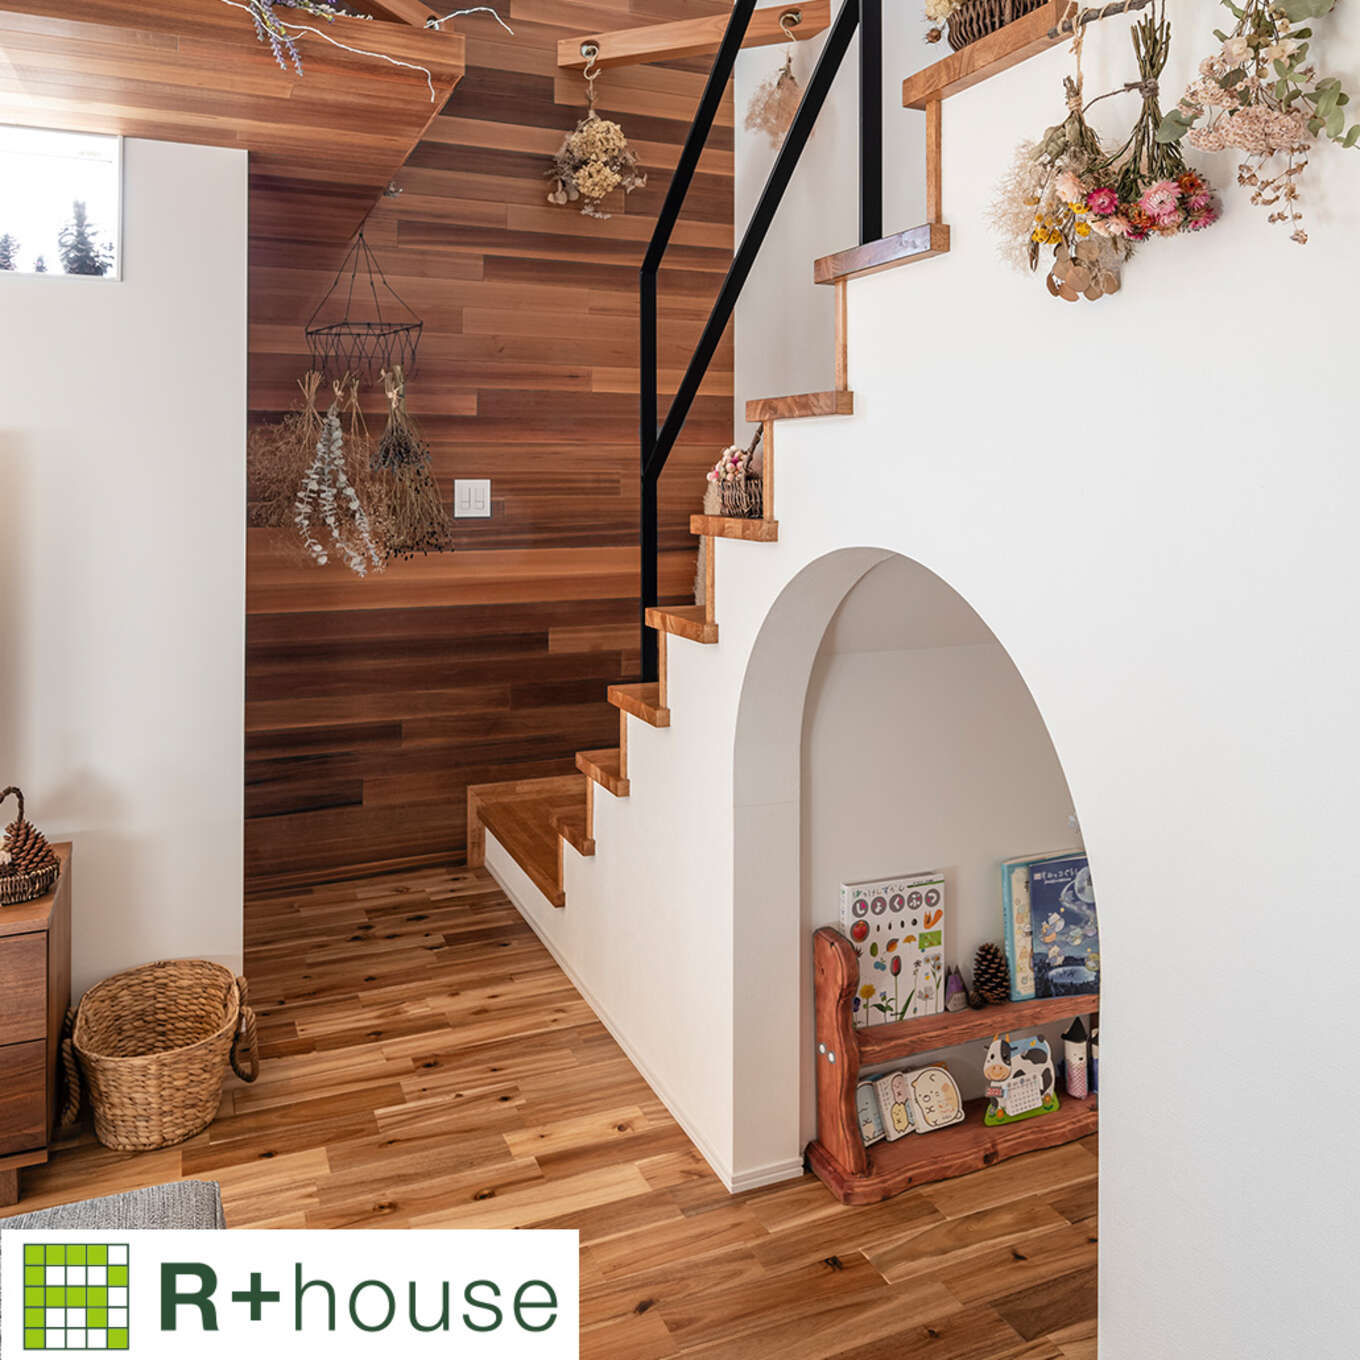 R+houseの物件の階段の写真です。階段下スペースをアーチ型に壁をくりぬき、絵本を置いてある。階段は二階まで吹き抜け。